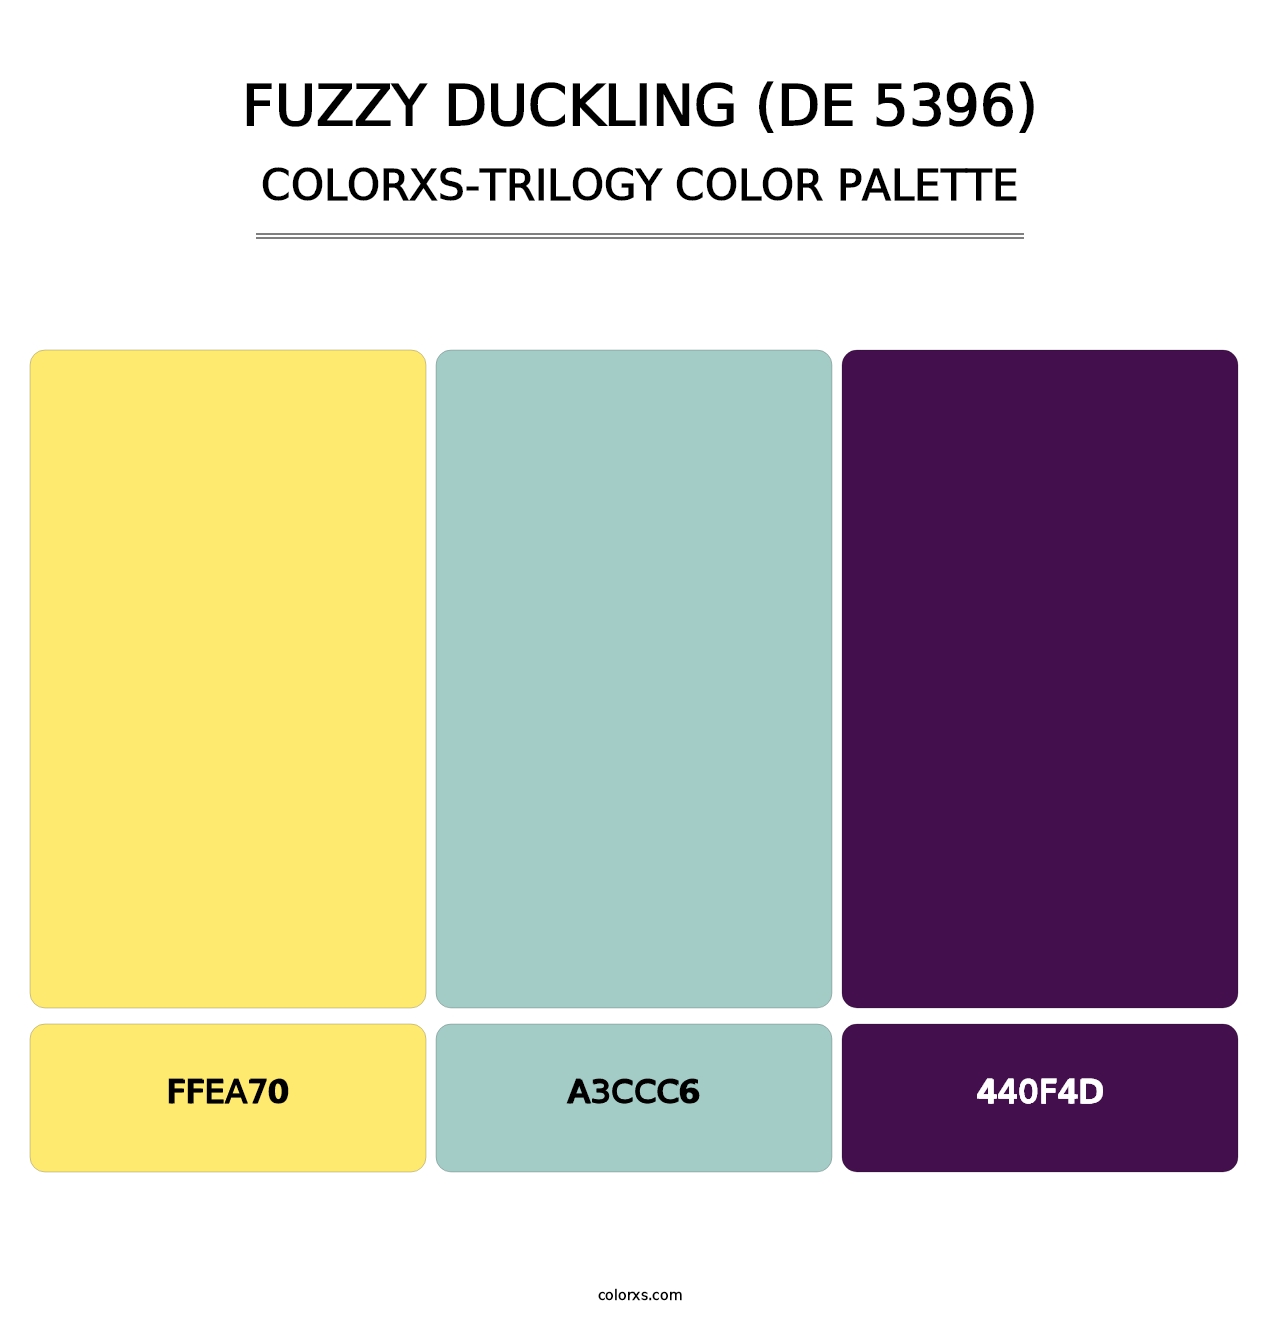 Fuzzy Duckling (DE 5396) - Colorxs Trilogy Palette